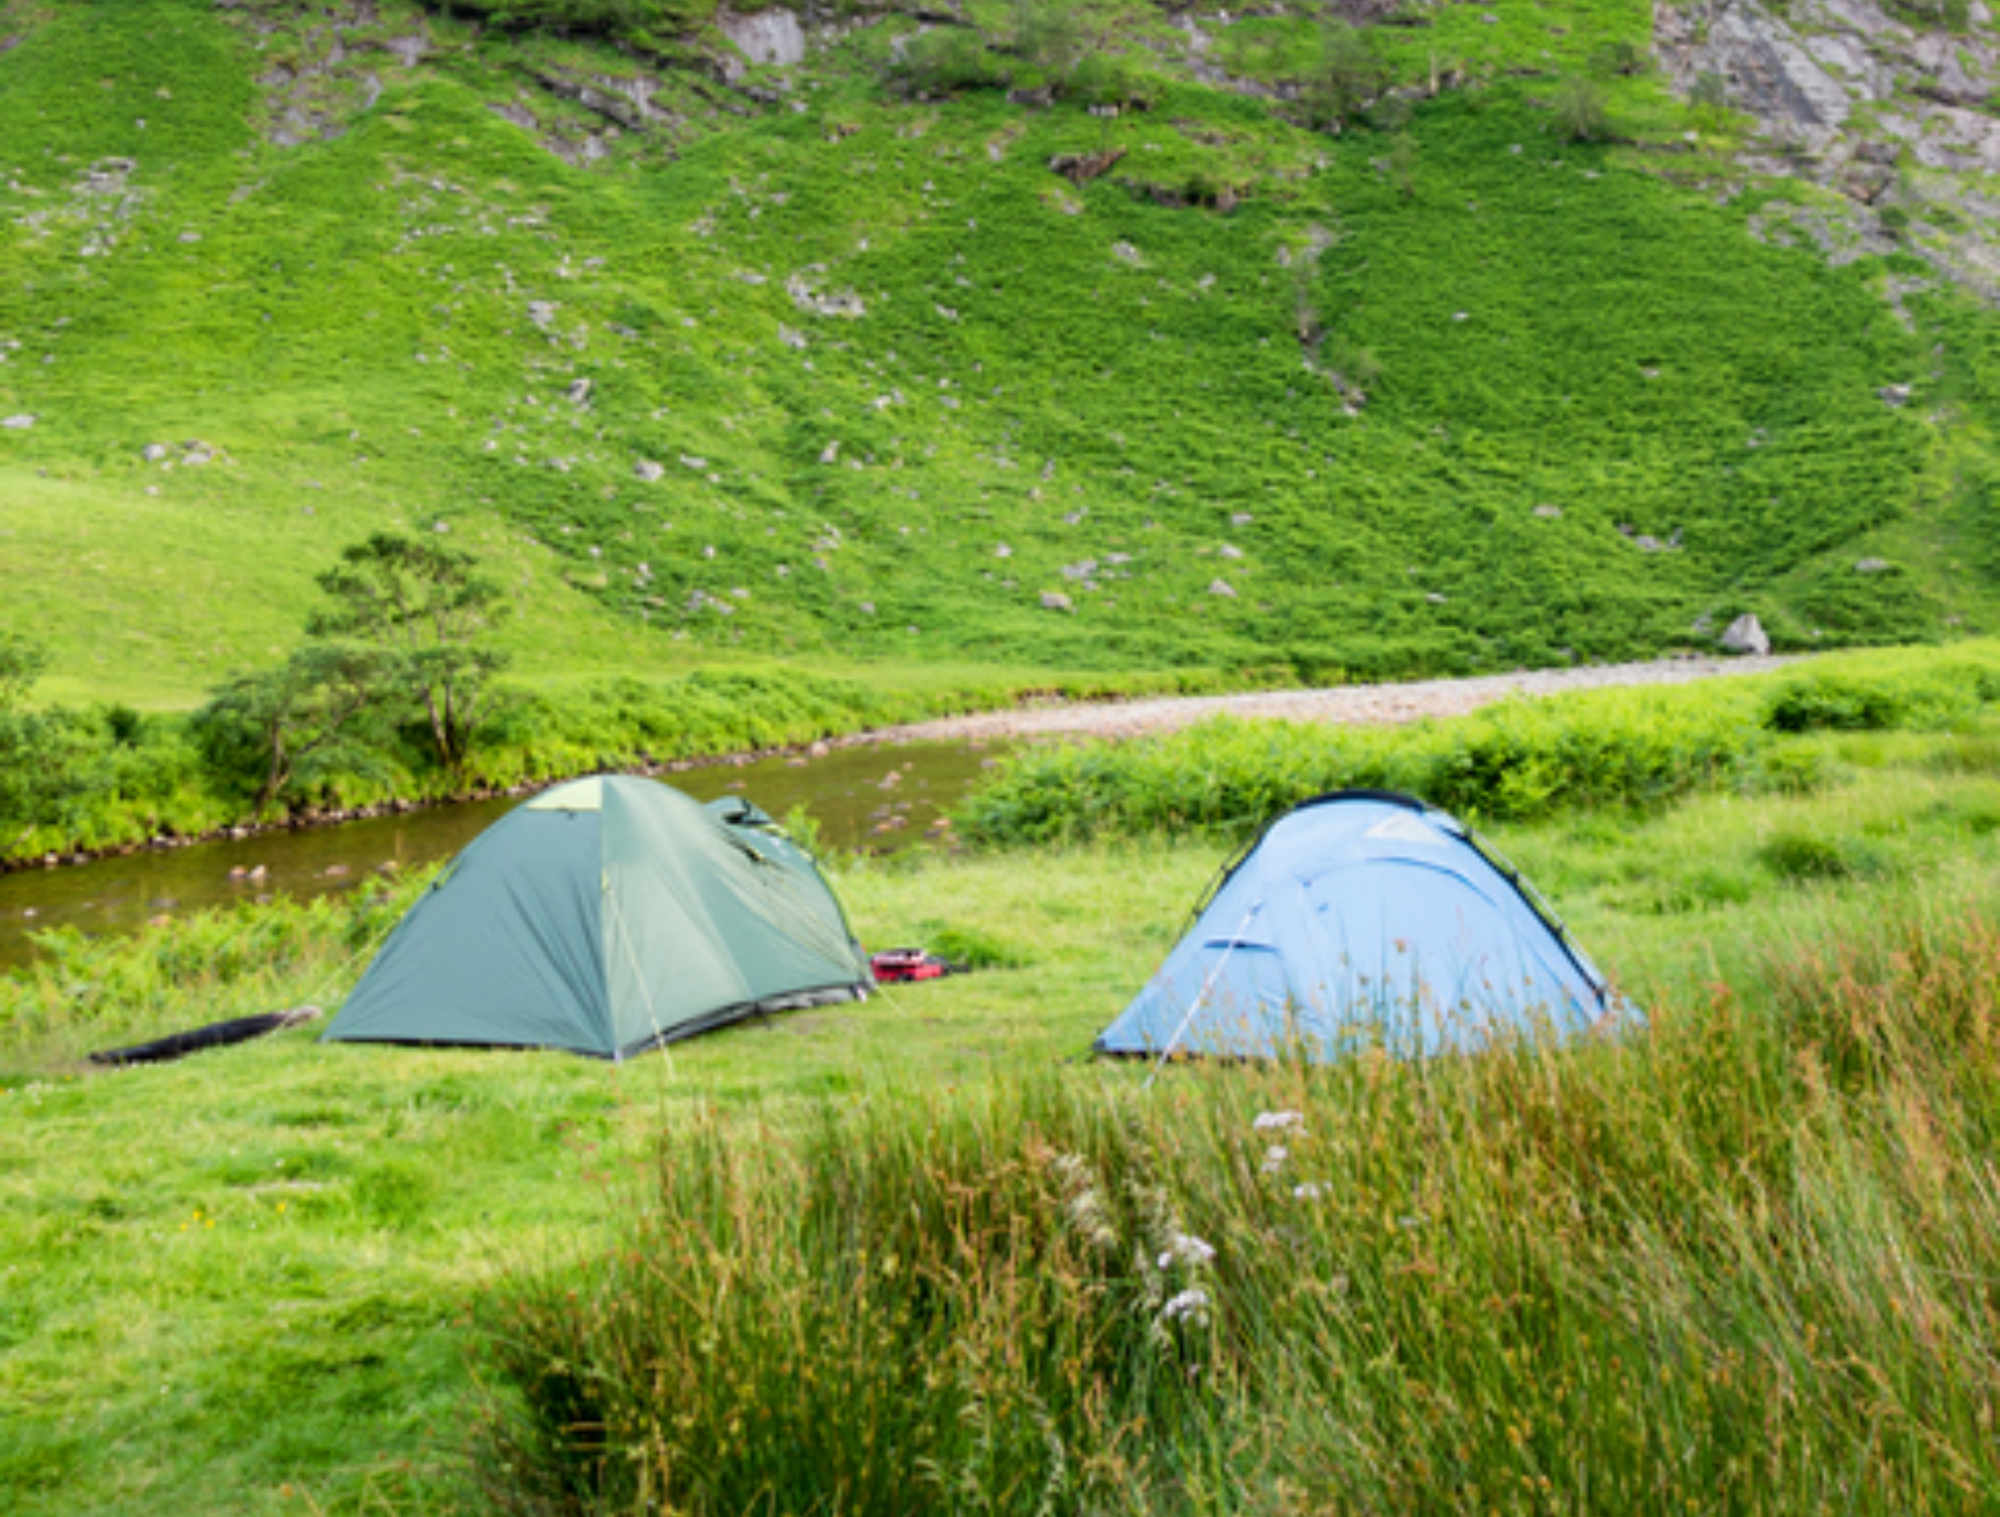 2 tents 